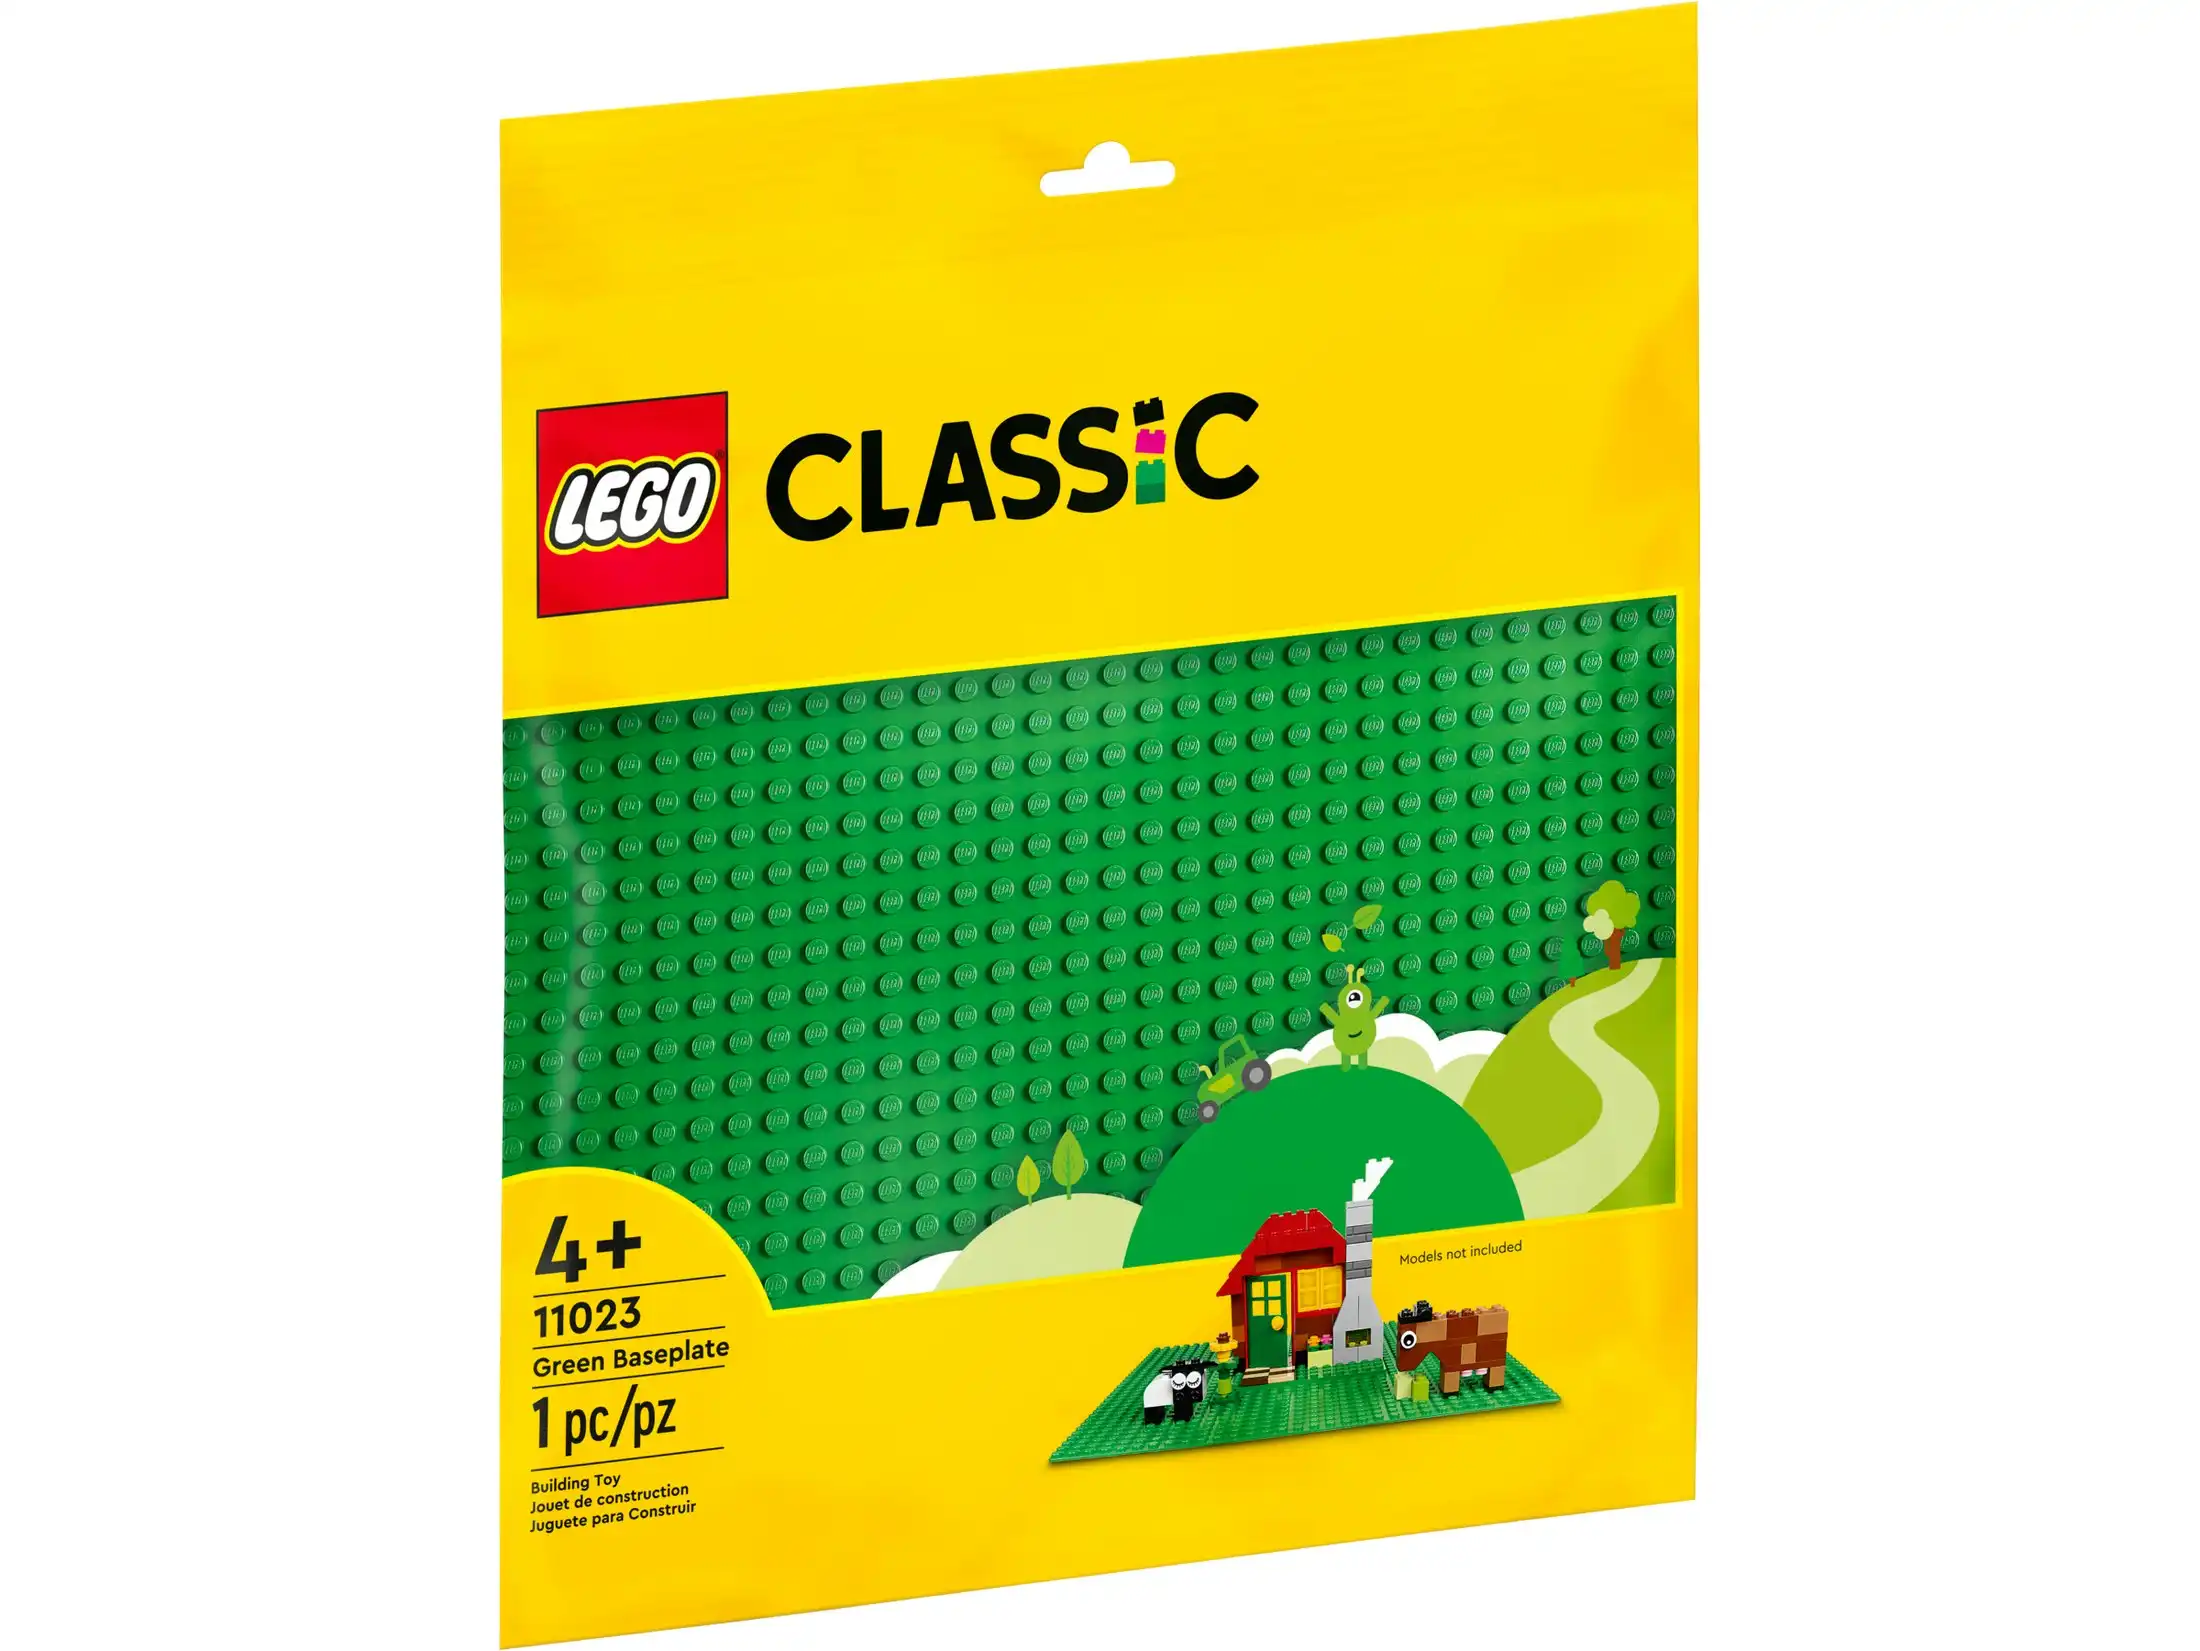 LEGO 11023 Green Baseplate - Classic 4+